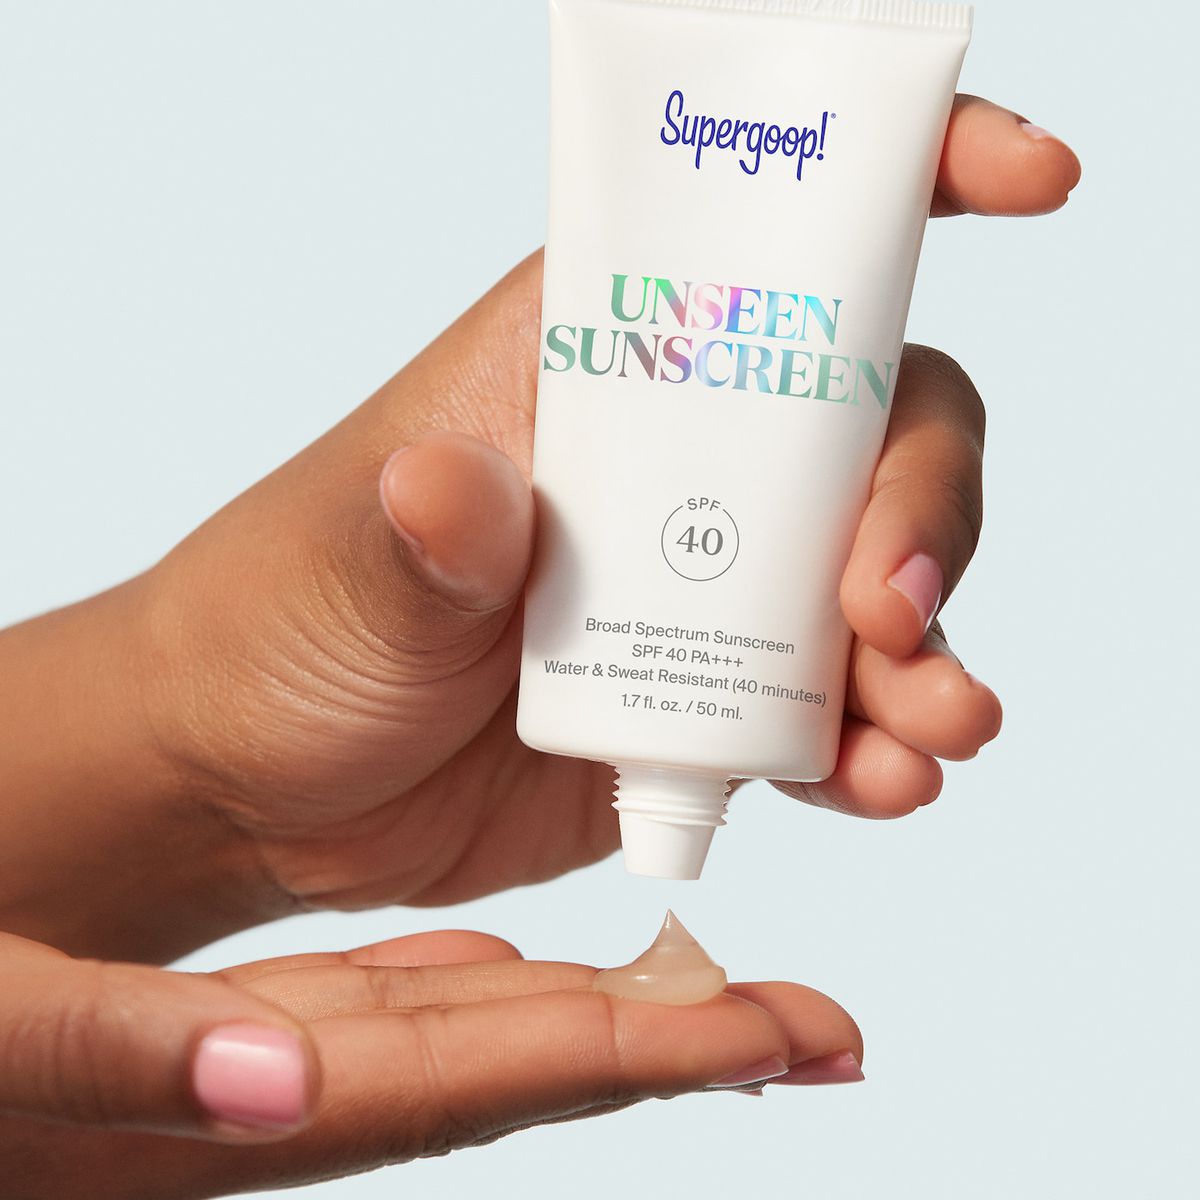 Supergoop Unseen Sunscreen Shown On Hand